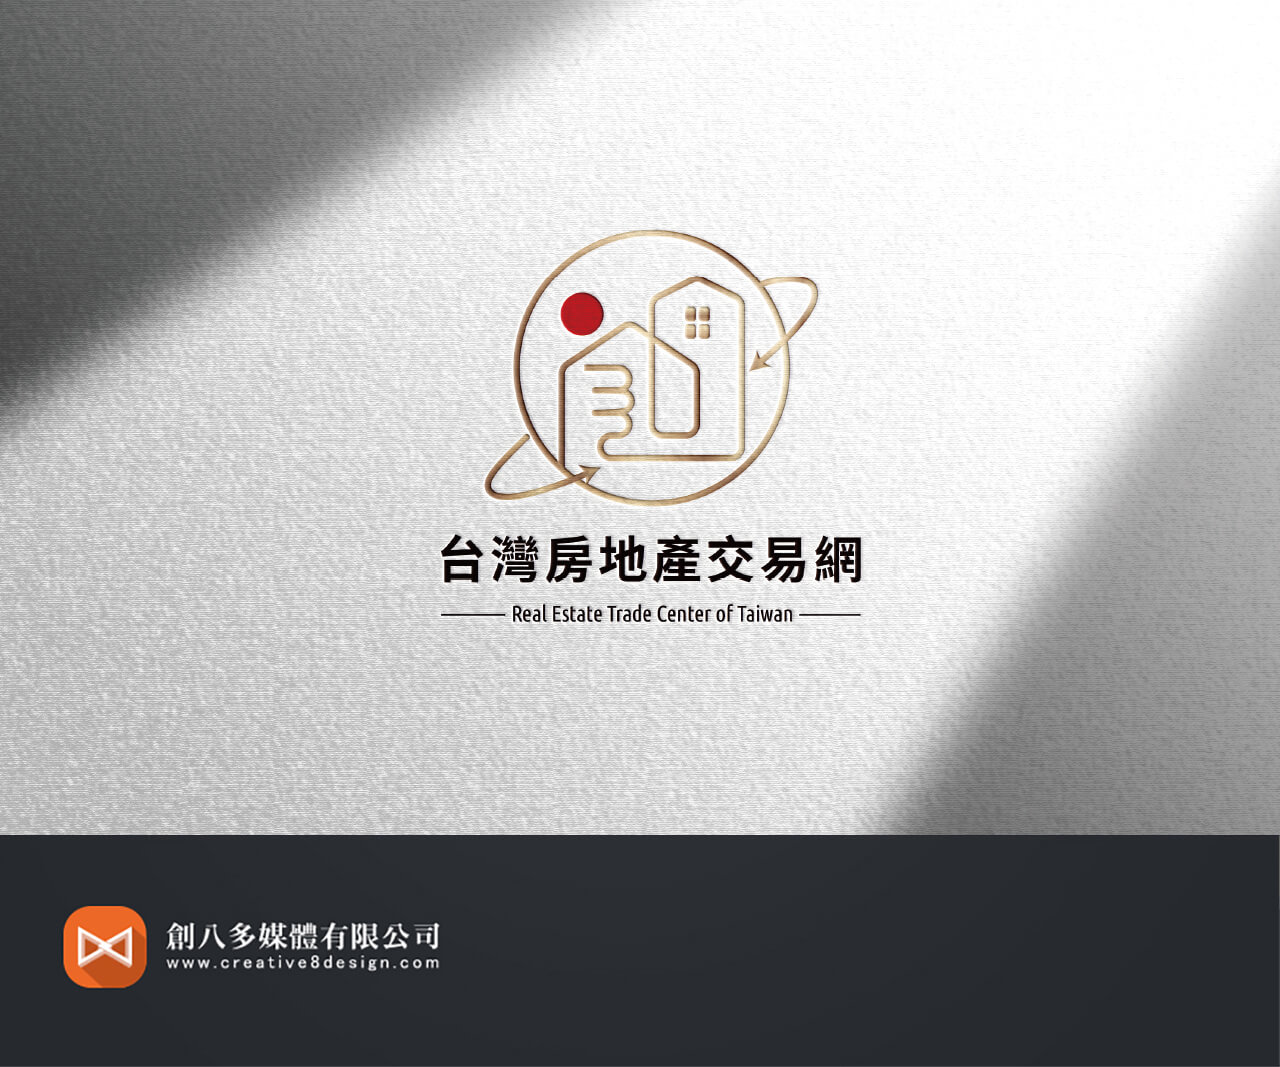 台灣房地產交易網的LOGO設計示意圖